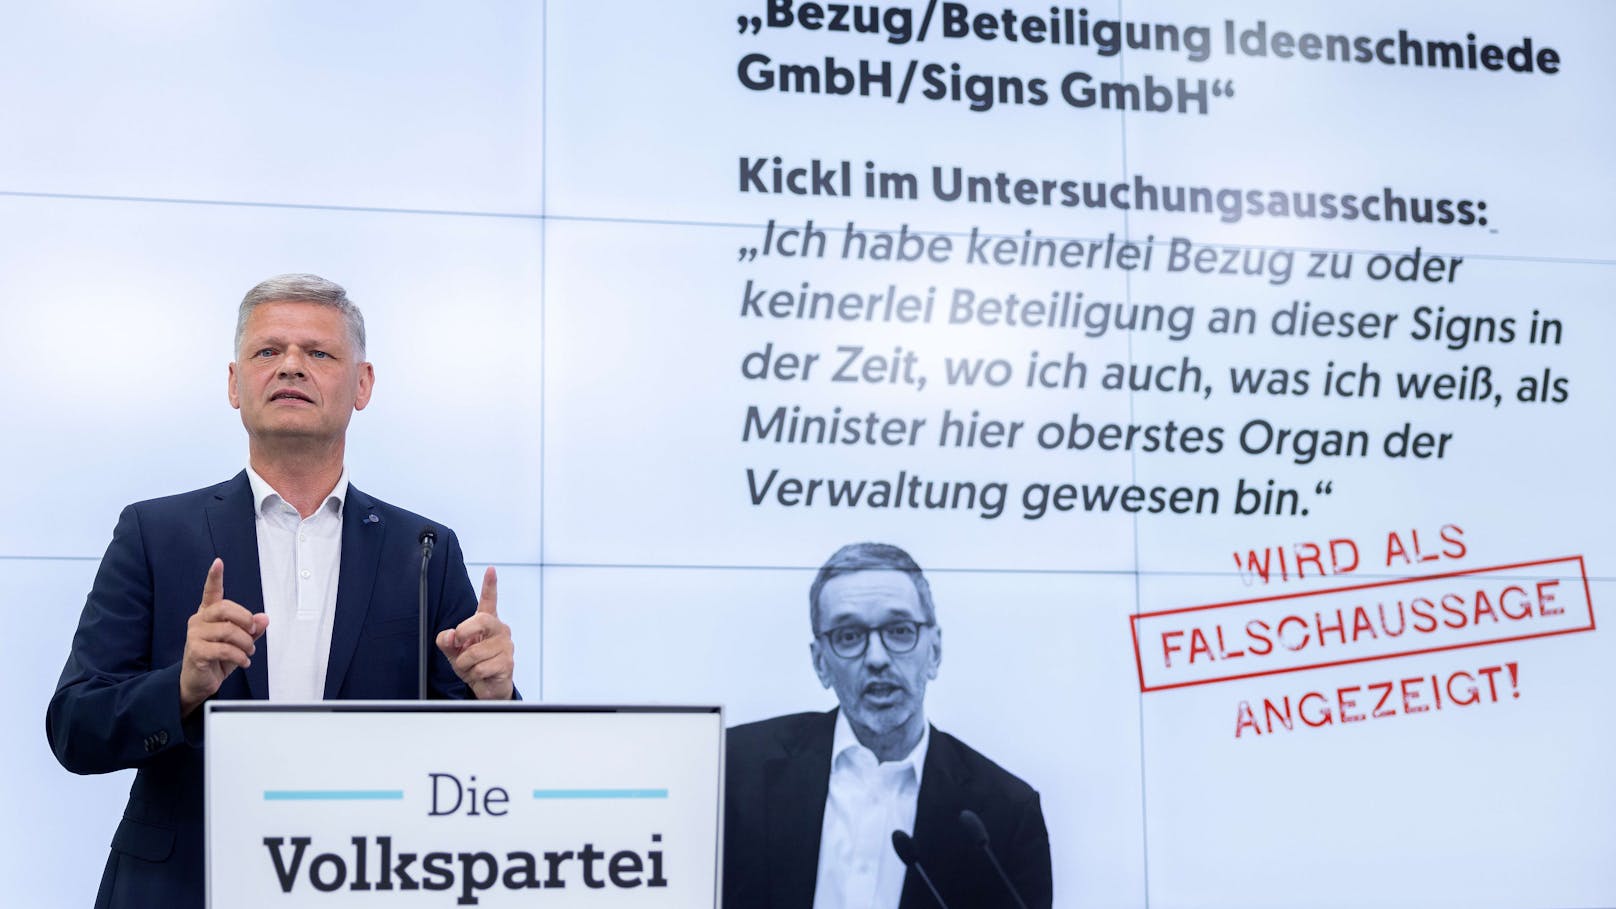 "Mehrfache Falschaussage" – ÖVP zeigt Herbert Kickl an